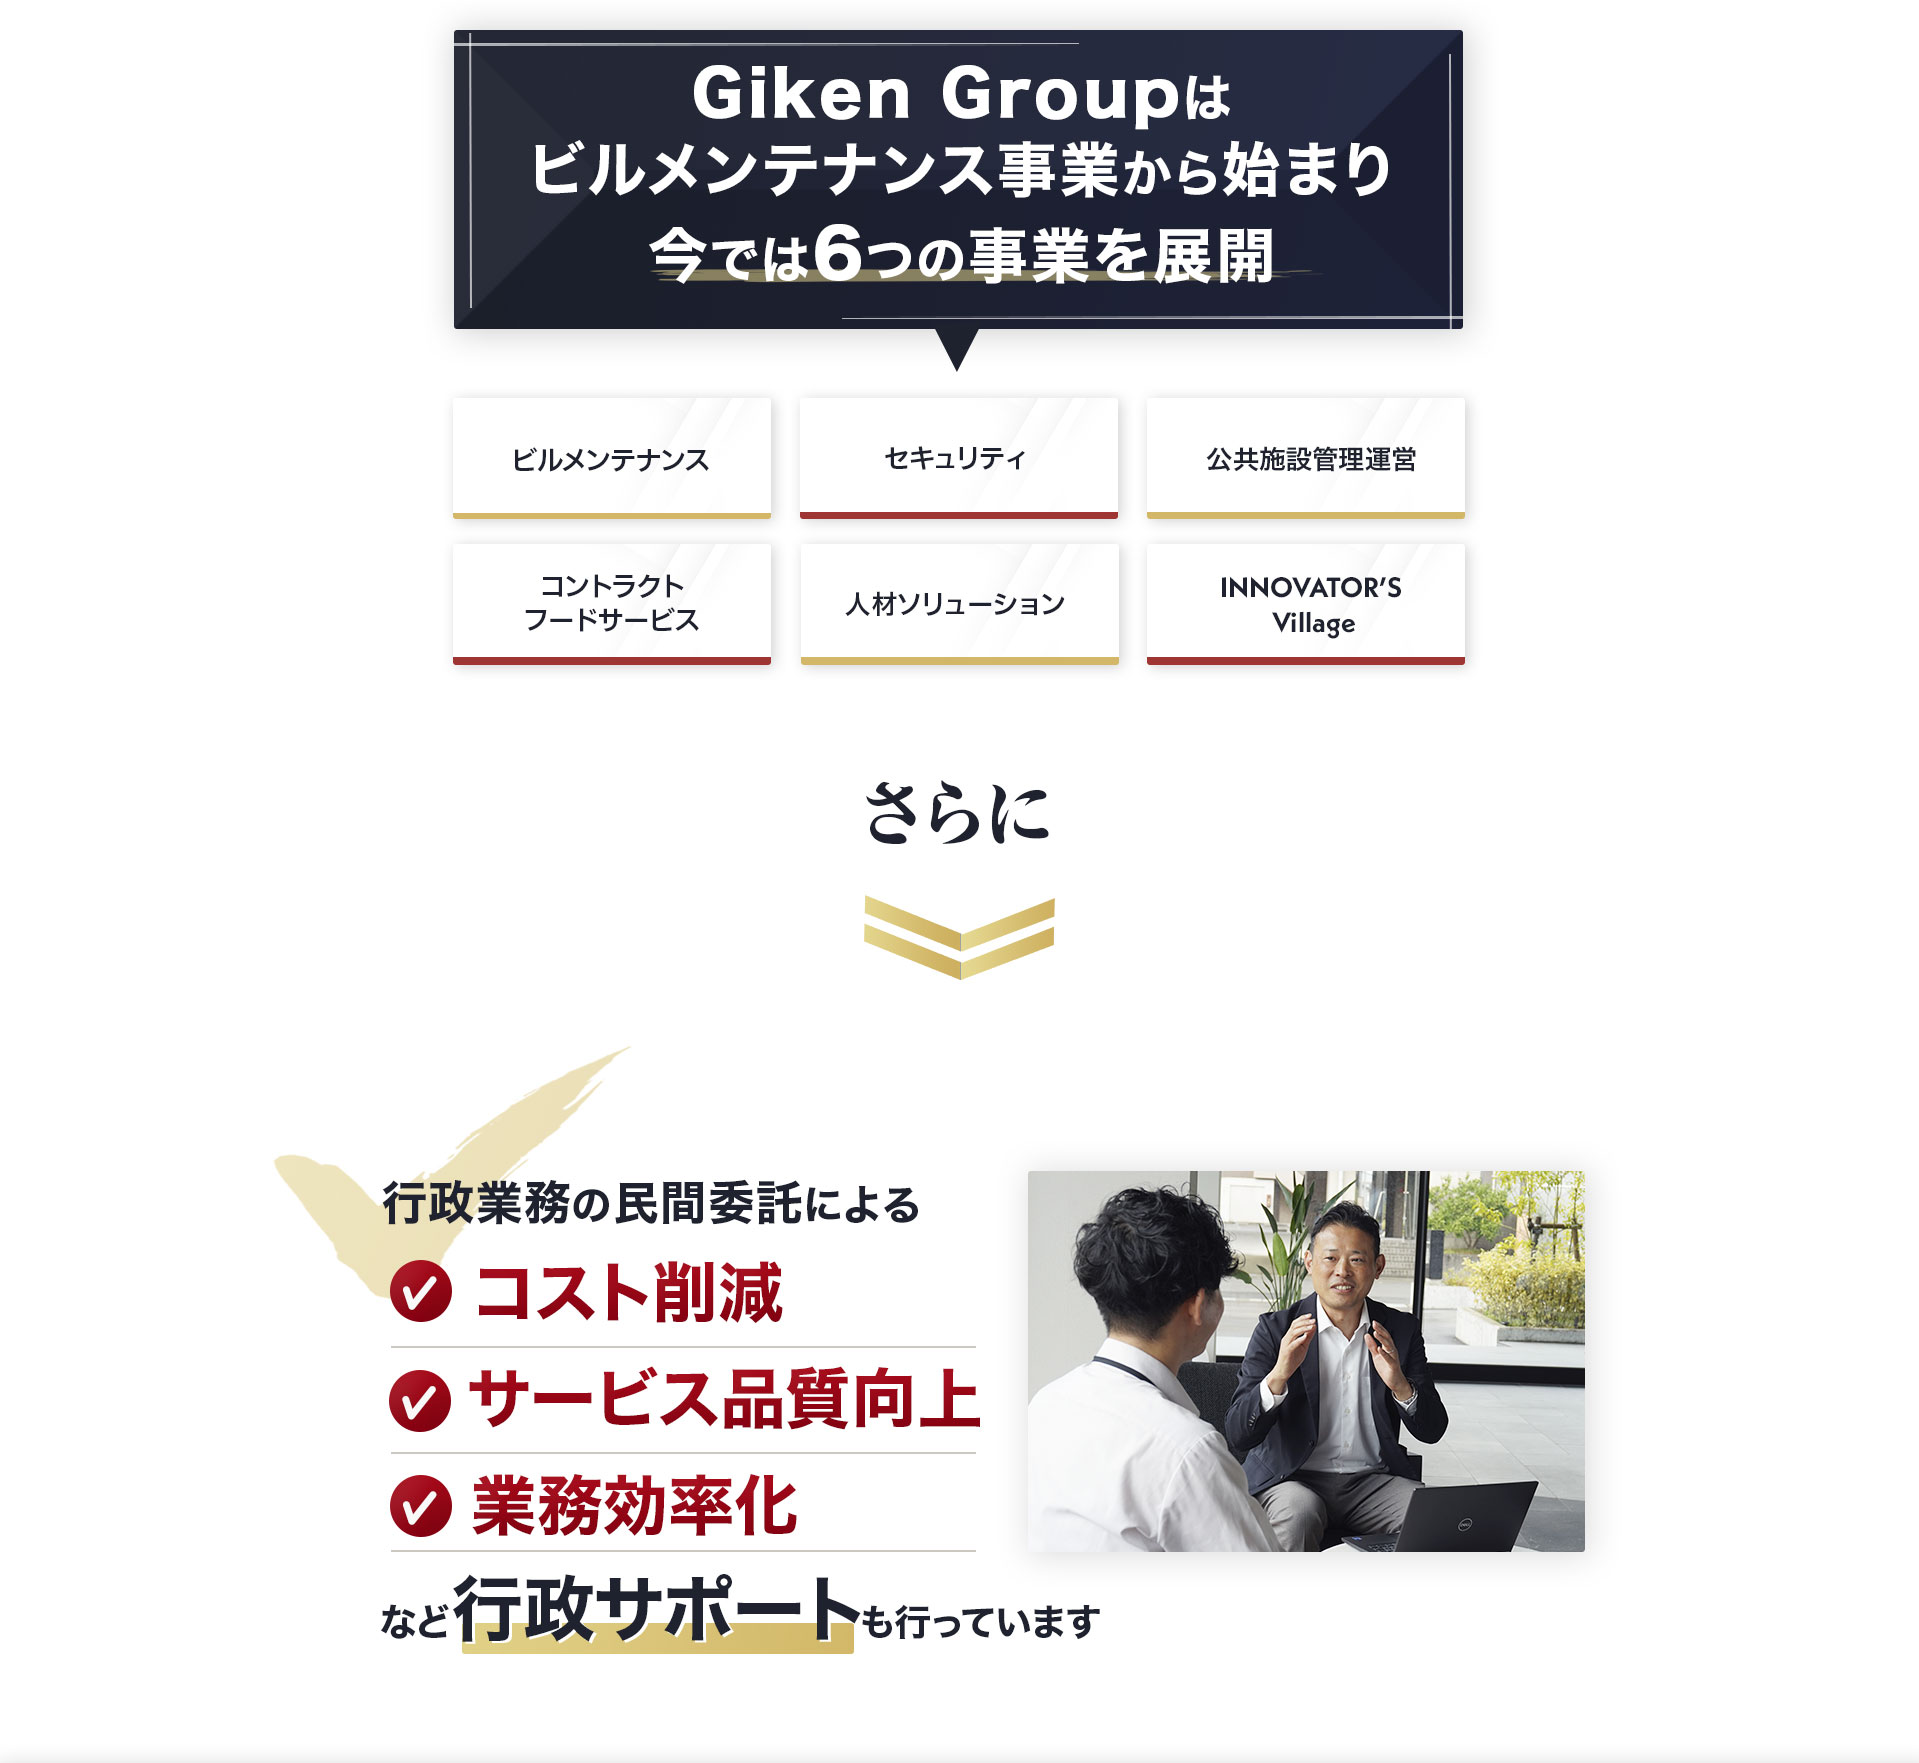 Giken Groupはビルメンテナンス事業から始まり今では6つの事業を展開